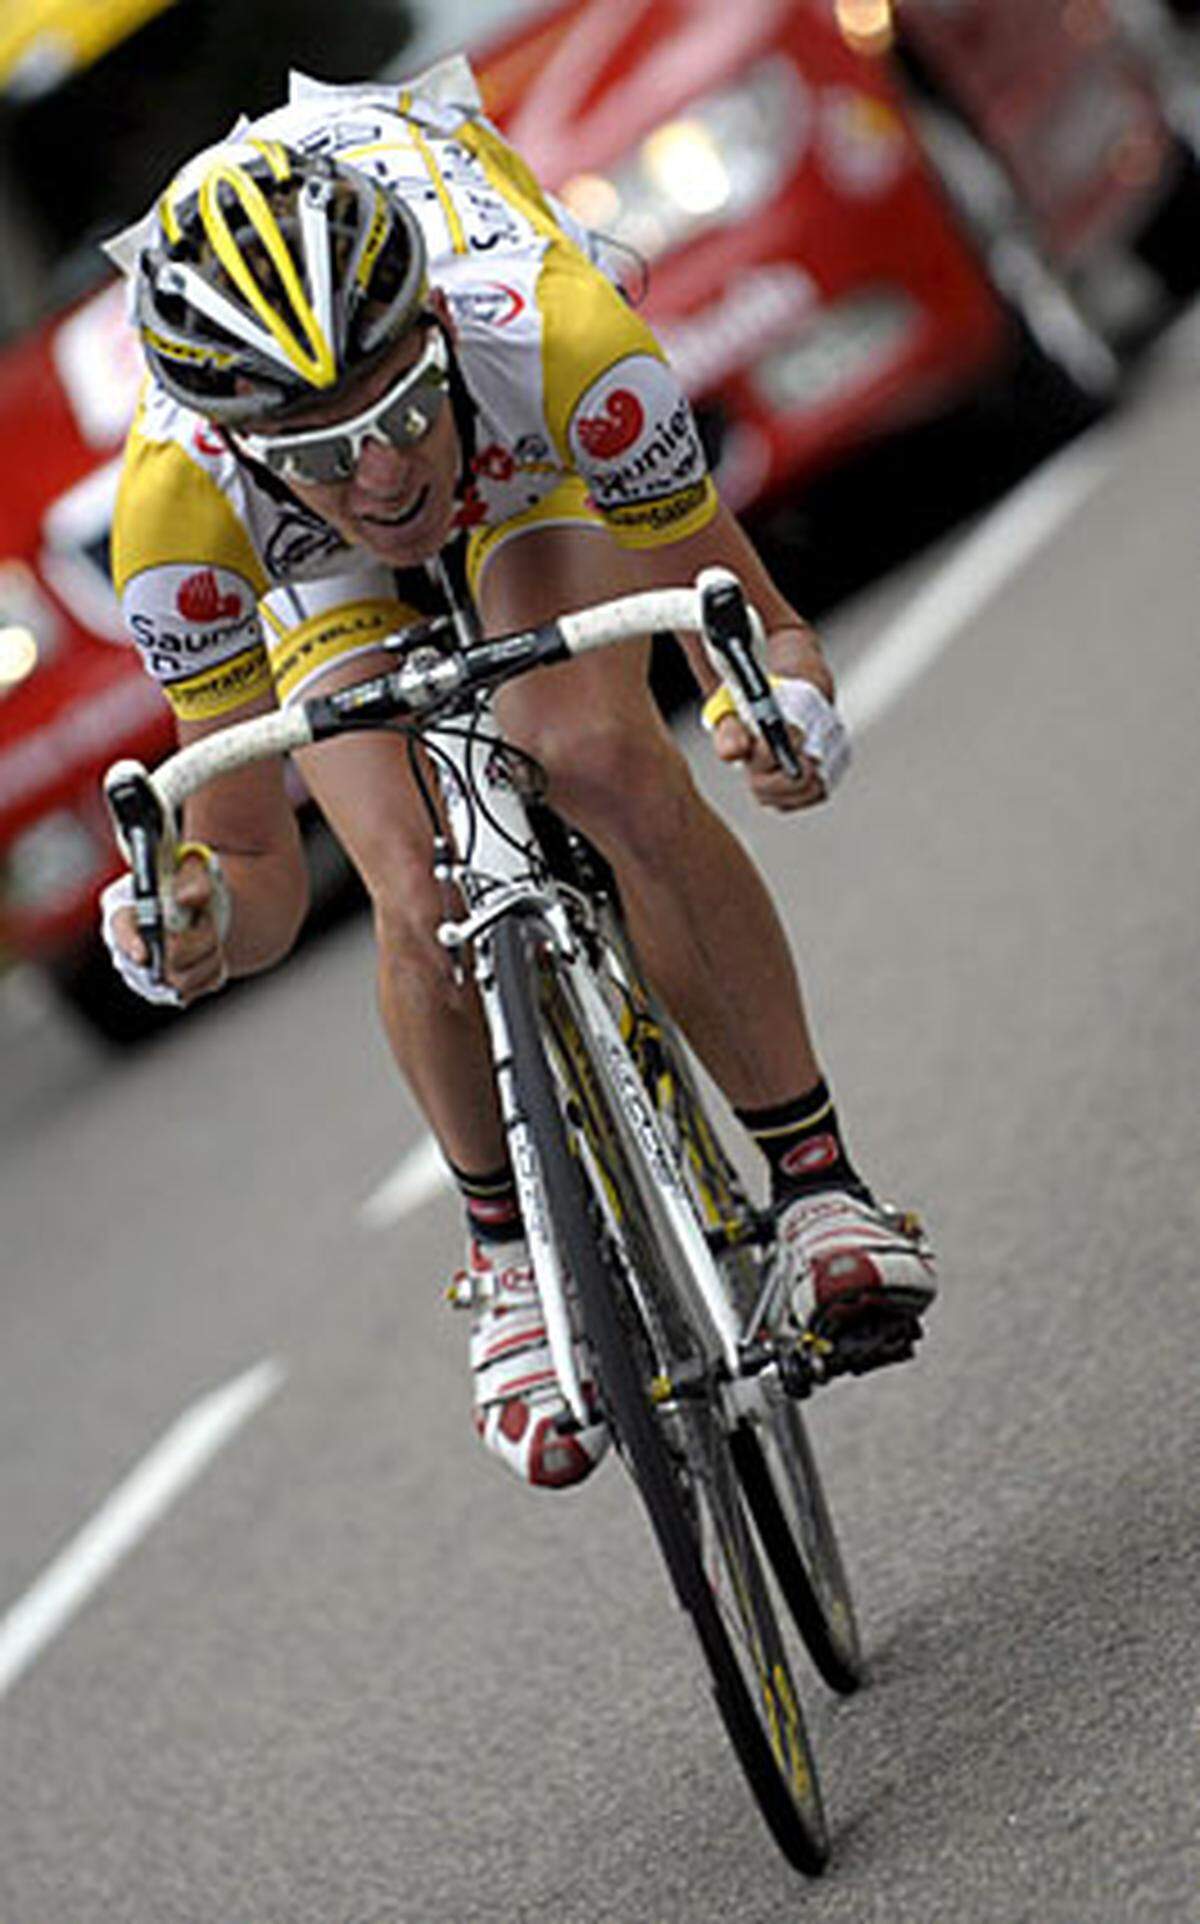 Vor dem Start der 12. Etappe der Tour de France wird bekannt, dass der Italiener Riccardo Ricco positiv auf das Blutdopingmittel EPO getestet wurde. Der 24-Jährige hatte die 6. und 9. Etappe gewonnen und führte in der Bergwertung und in der Wertung der Jungprofis. In der Gesamtwertung lag Ricco auf Platz neun, der Italiener wurde für zwei Jahre gesperrt.